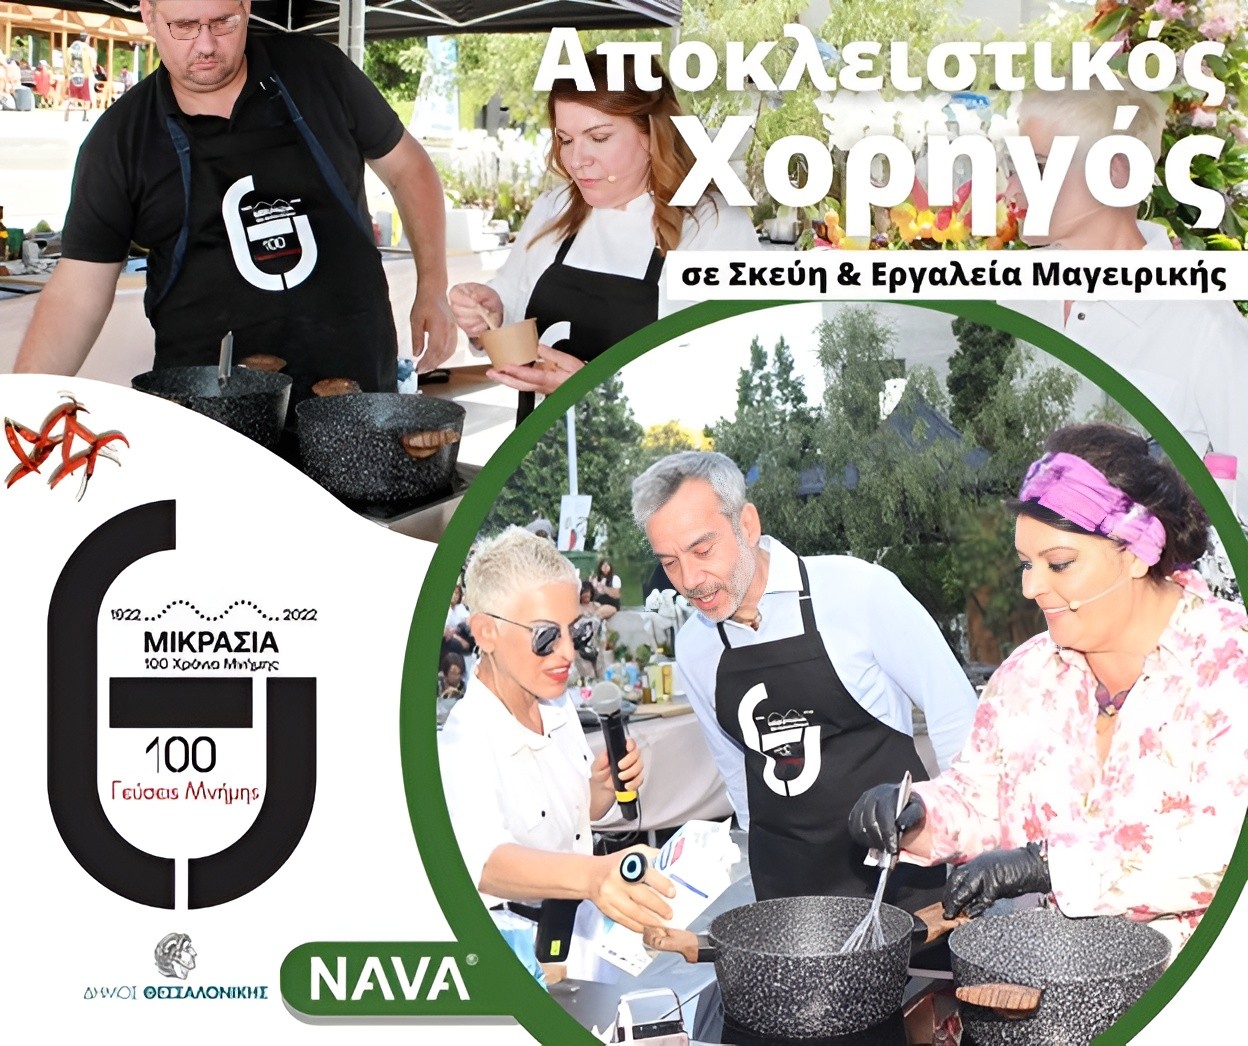 Η ΝΑVA αποκλειστικός χορηγός της εκδήλωσης ‘Γεύσεις μνήμης’ για τα 100 χρόνια από τη μικρασιατική καταστροφή του Δήμου Θεσσαλονίκης